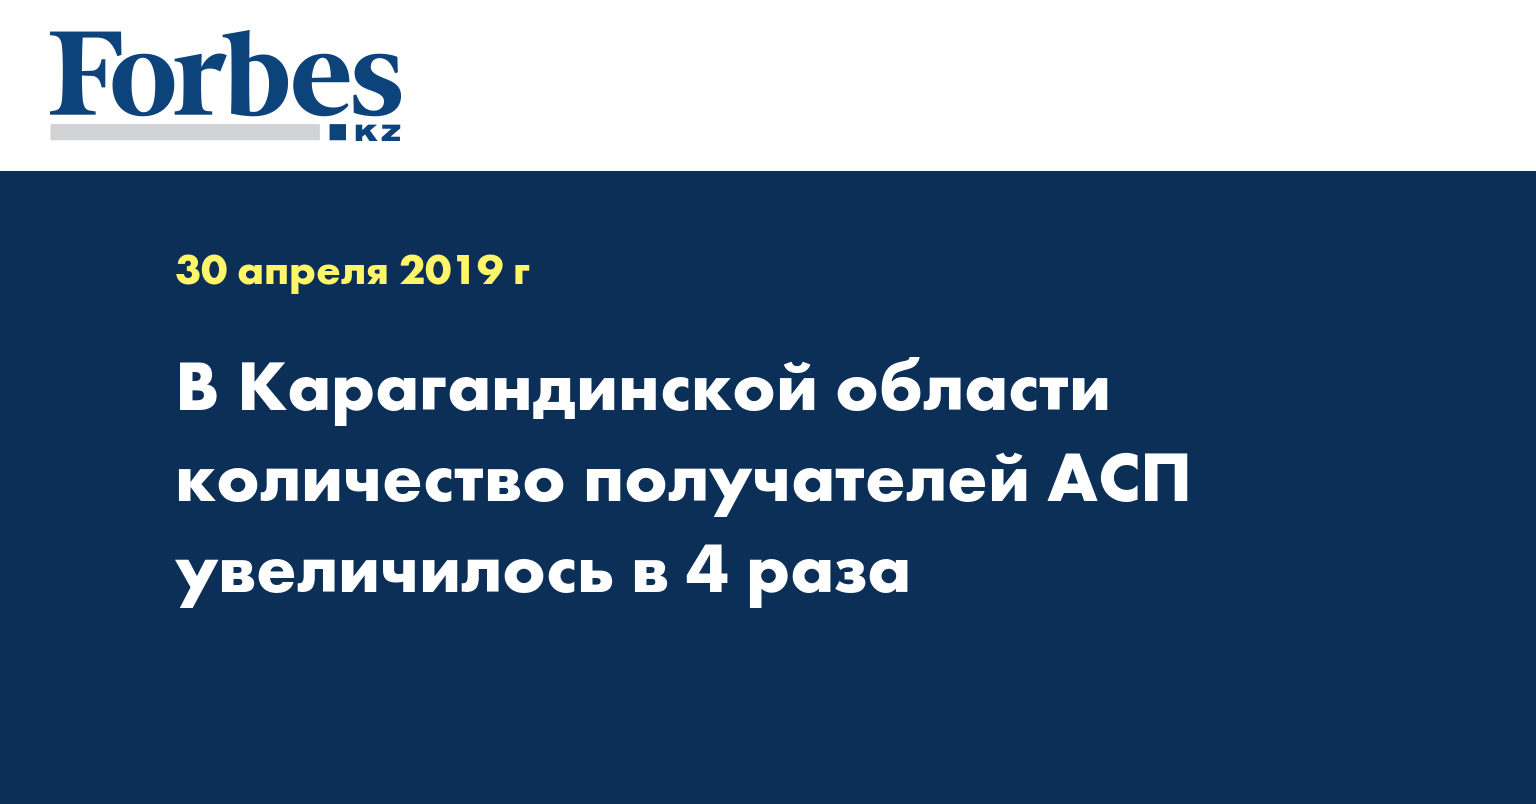 В Карагандинской области количество получателей АСП увеличилось в 4 раза